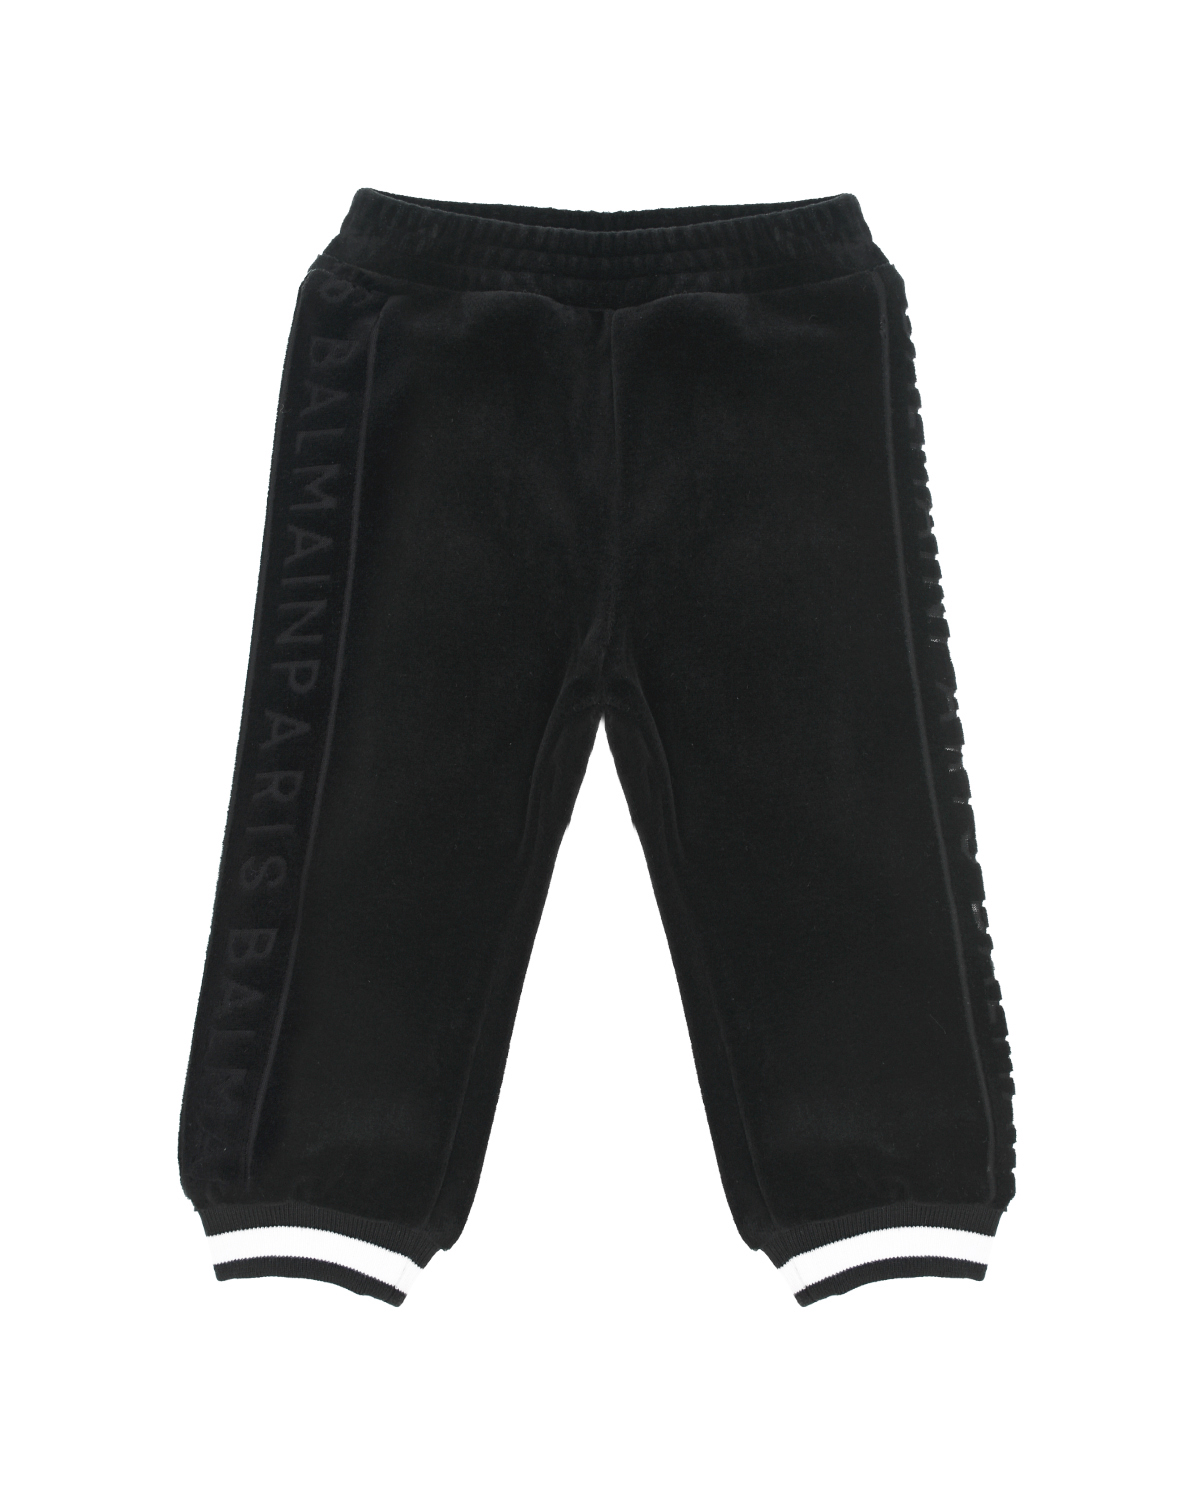 Спортивные брюки с контрастными полосками на манжетах Balmain детские, размер 68, цвет черный - фото 1